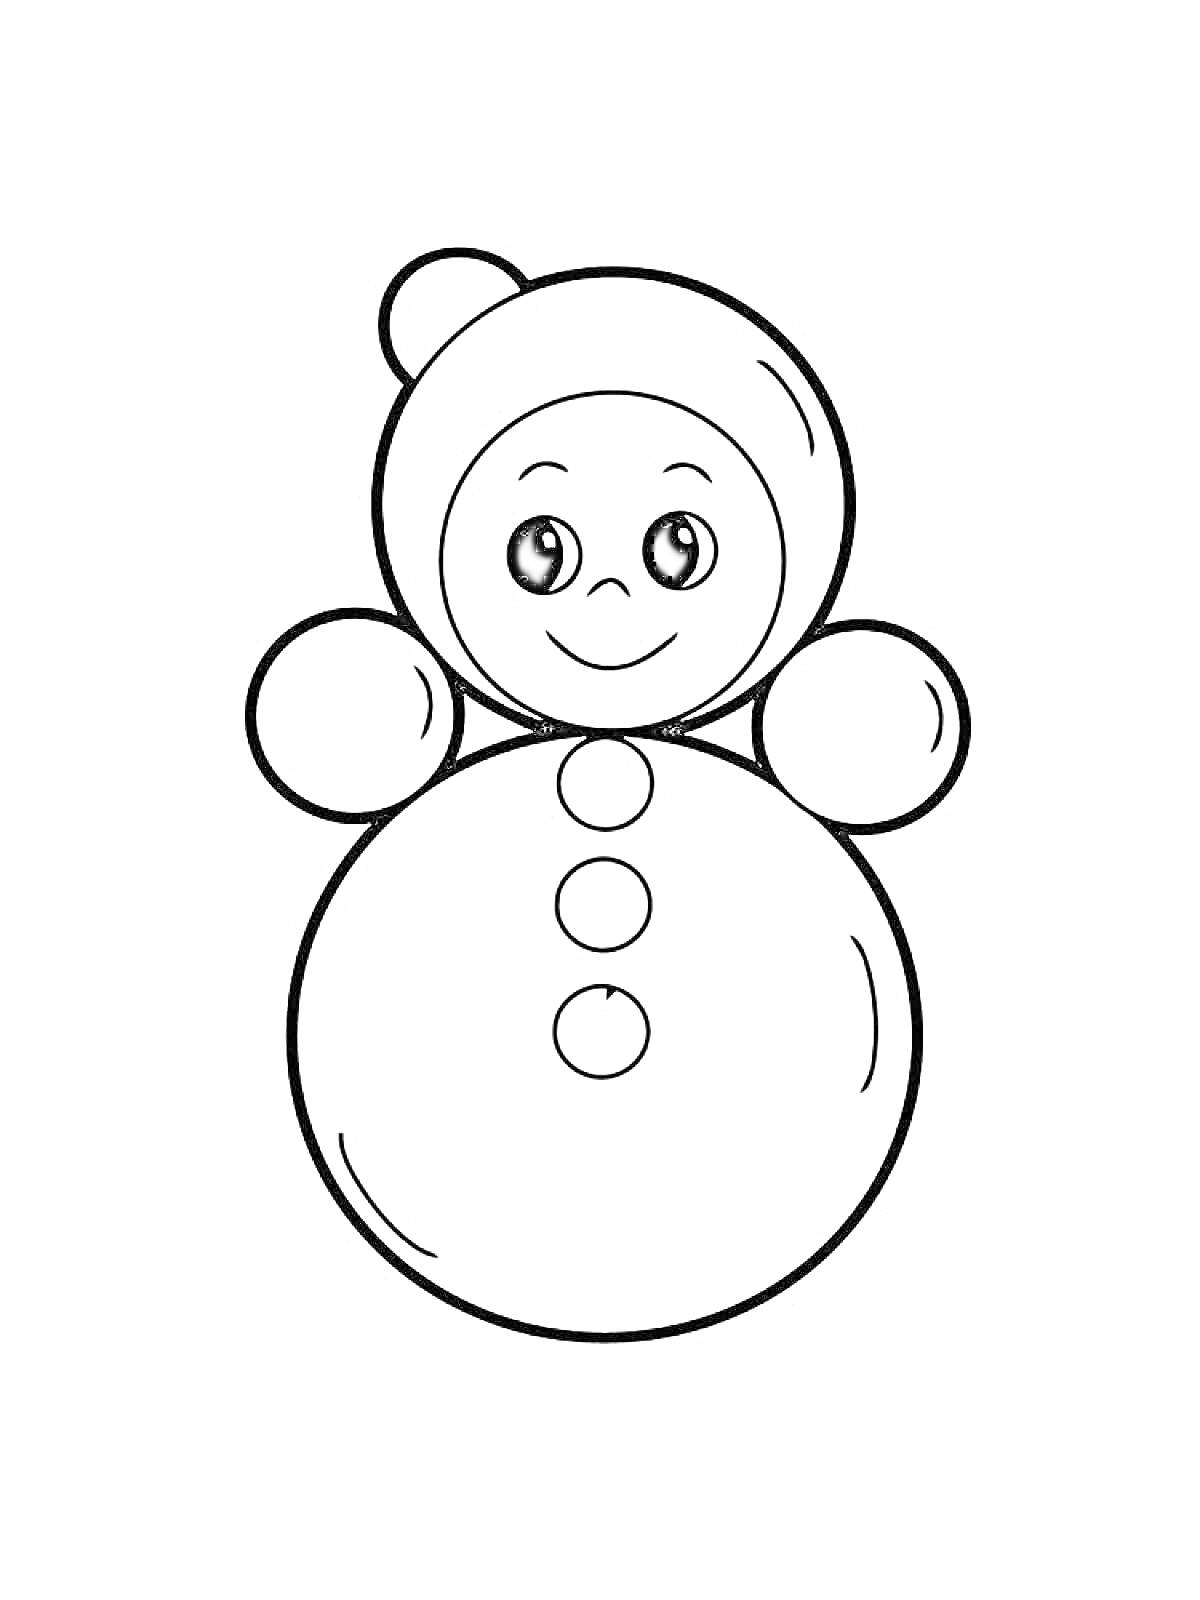 Раскраска Снеговик с круглой головой, тремя пуговицами, двумя большими круглыми руками и шапкой с помпоном